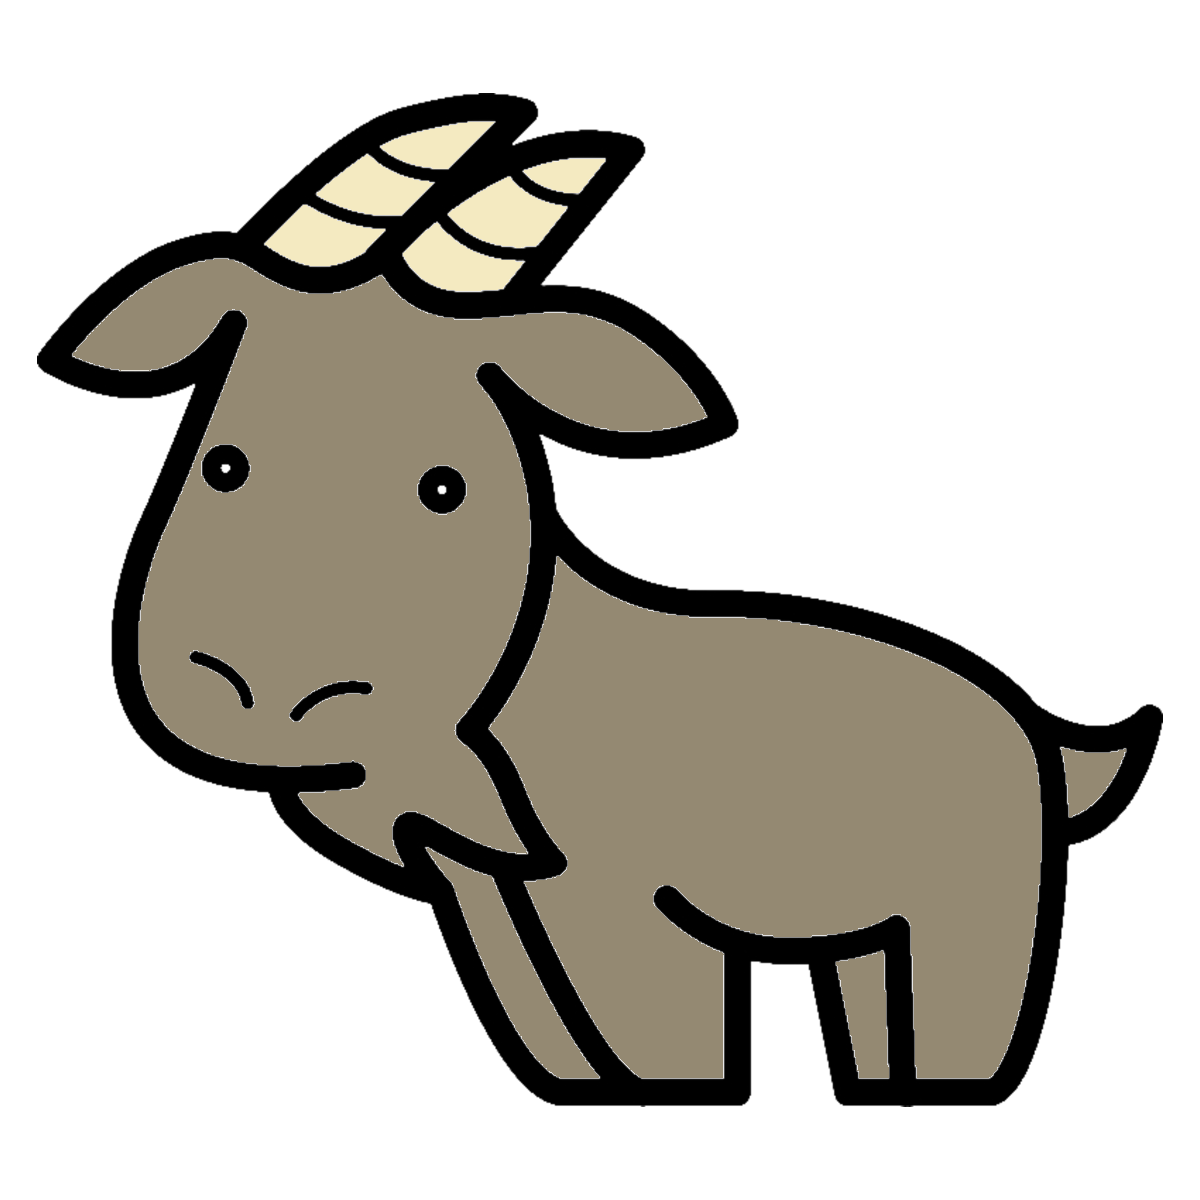 Illustrated goat image